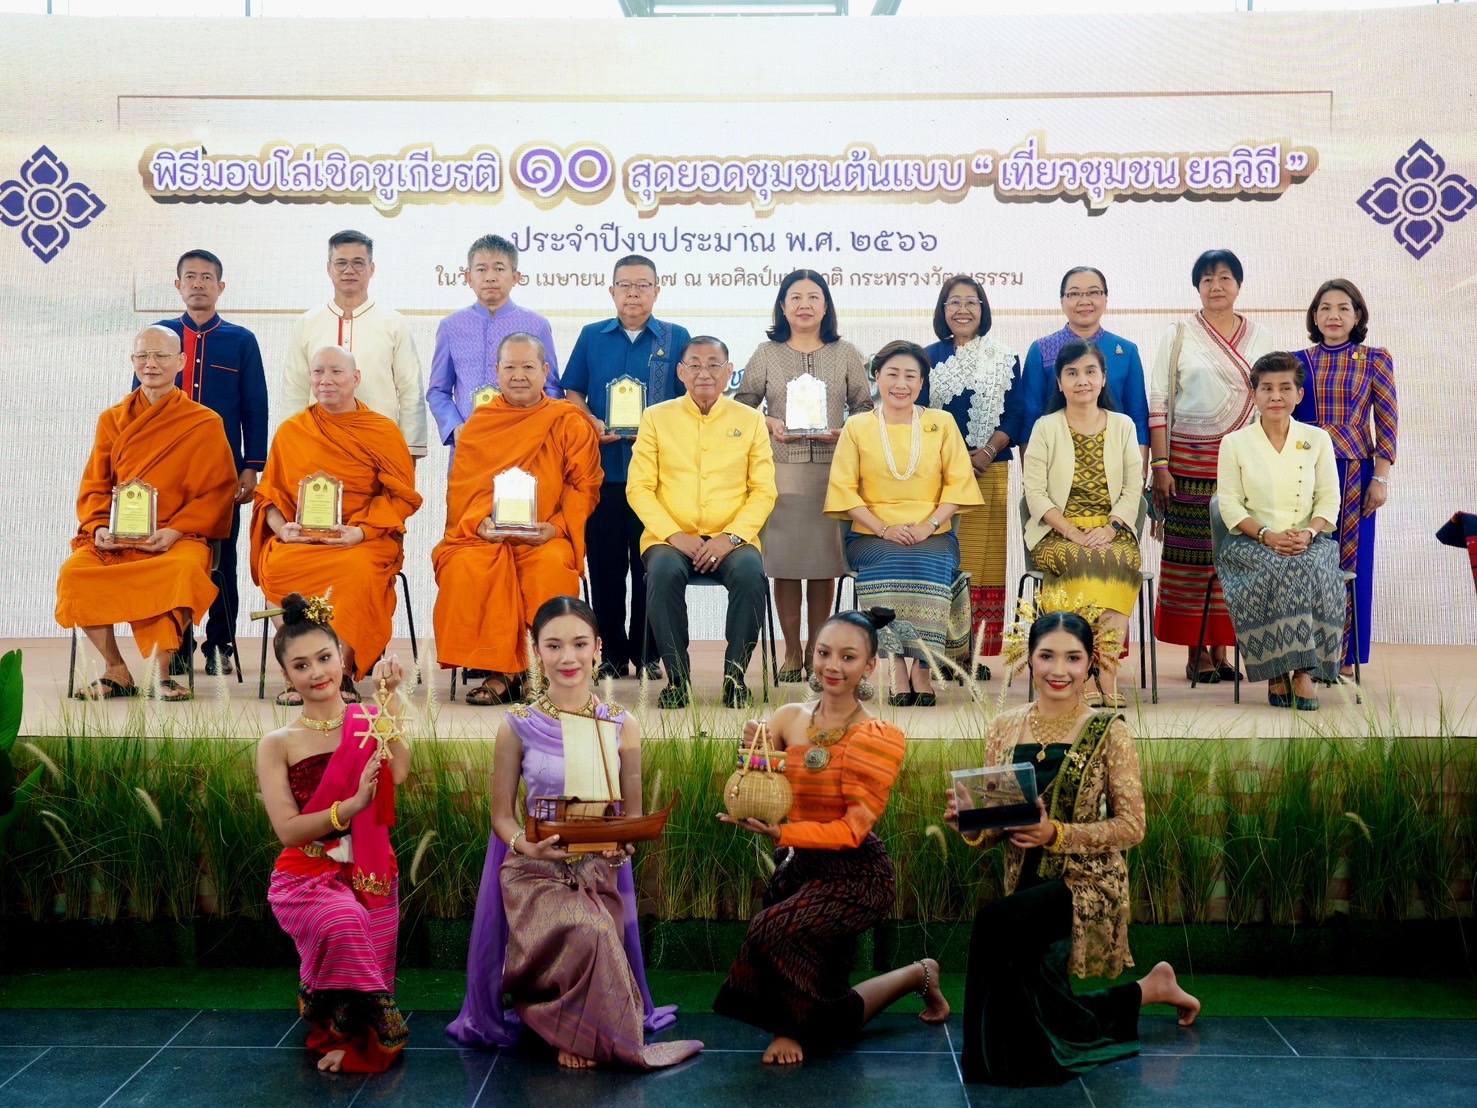  “เสริมศักดิ์”มอบโล่รางวัล 10 สุดยอดชุมชนต้นแบบ “เที่ยวชุมชน ยลวิถี”ปี66 ชูเป็นหมุดหมายท่องเที่ยวของคนไทยและต่างชาติ สร้างงานสร้างรายได้แก่ชาวบ้านและชุมชน กระตุ้นเศรษฐกิจประเทศ